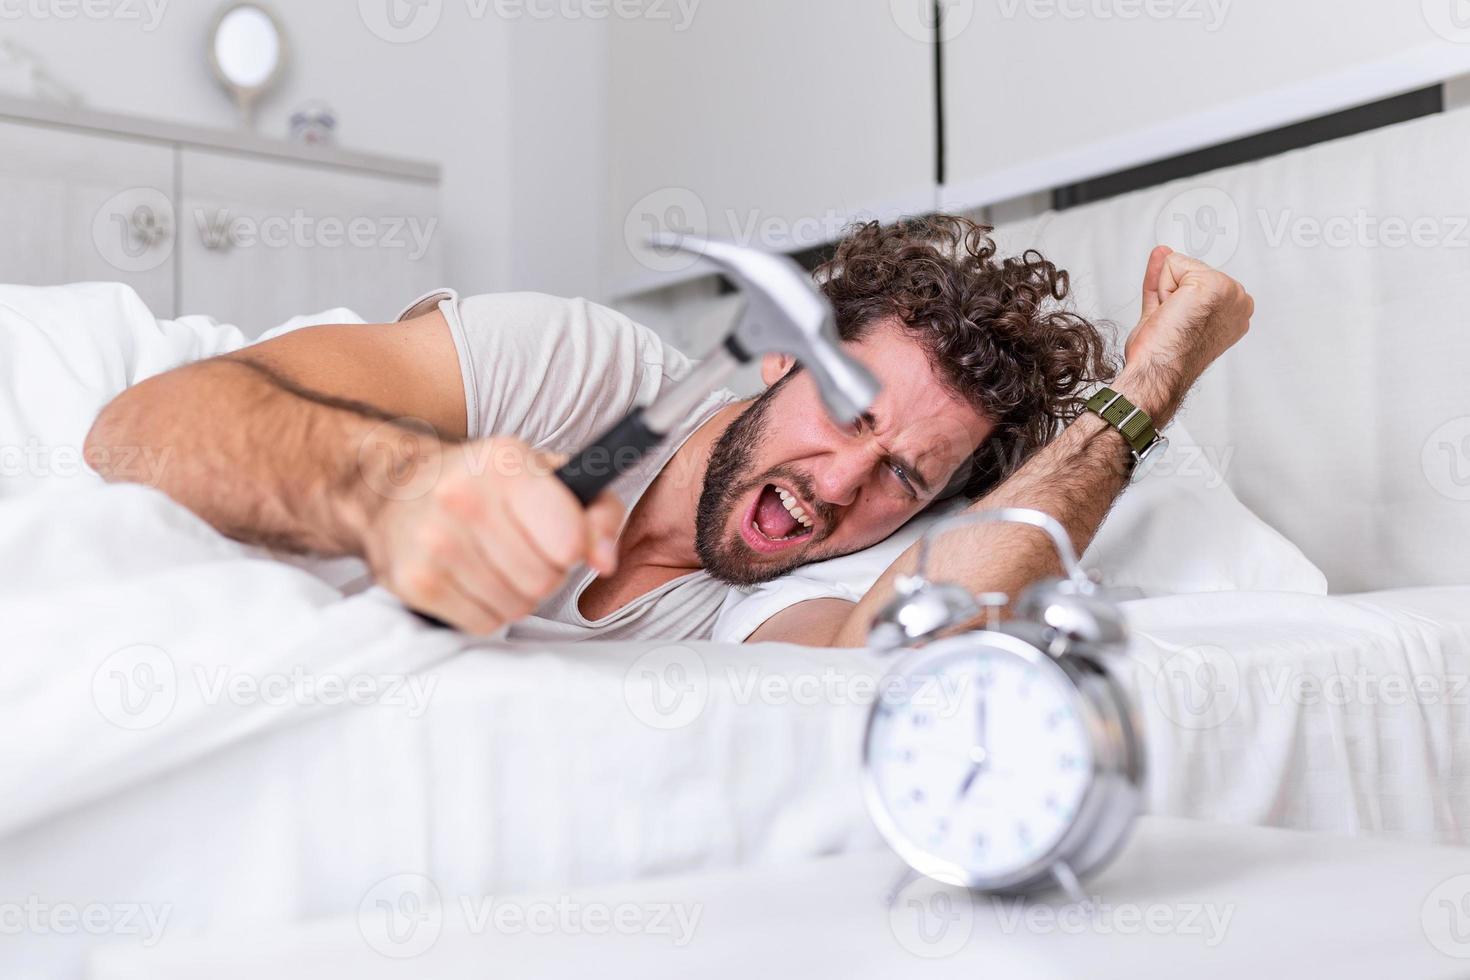 le jeune homme essaie de casser le réveil avec un marteau, de détruire l'horloge. homme allongé dans son lit éteignant un réveil avec un marteau le matin à 7h00. photo